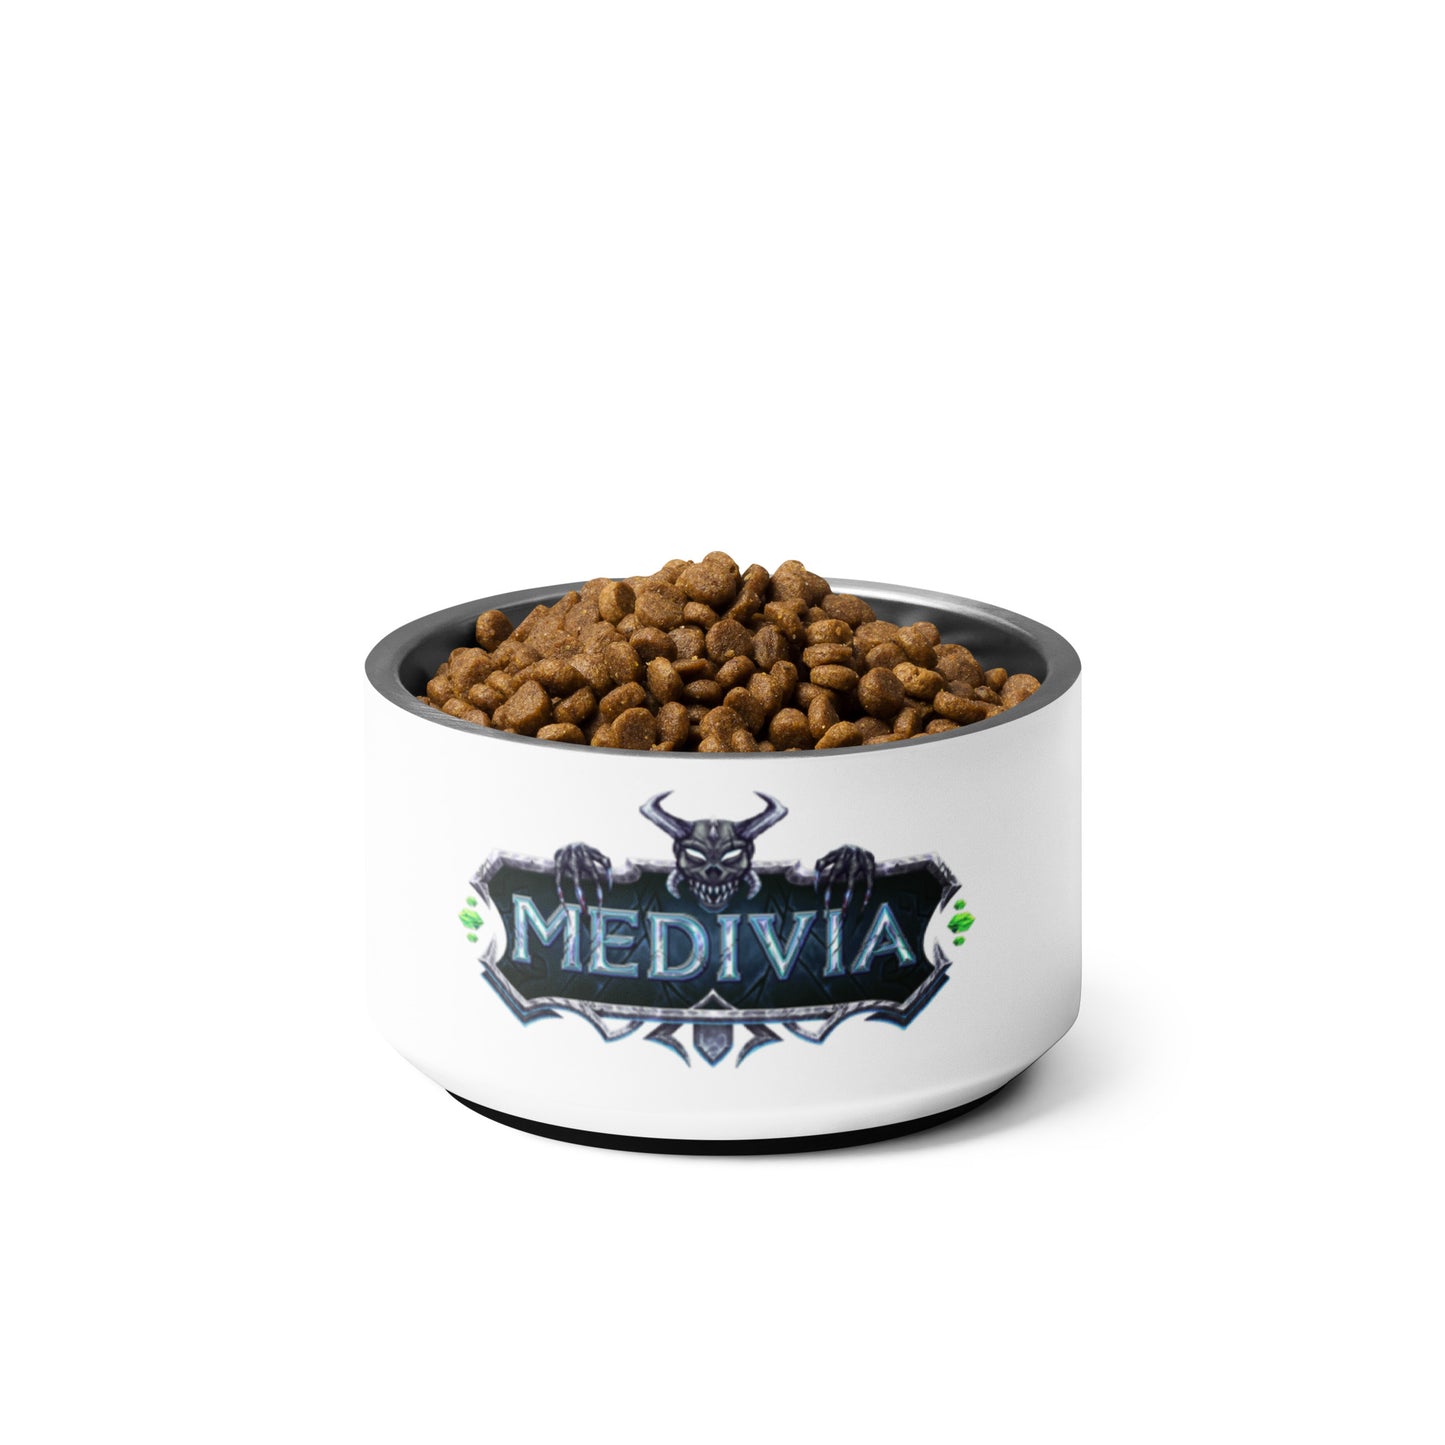 Medivia Logo Pet Bowl